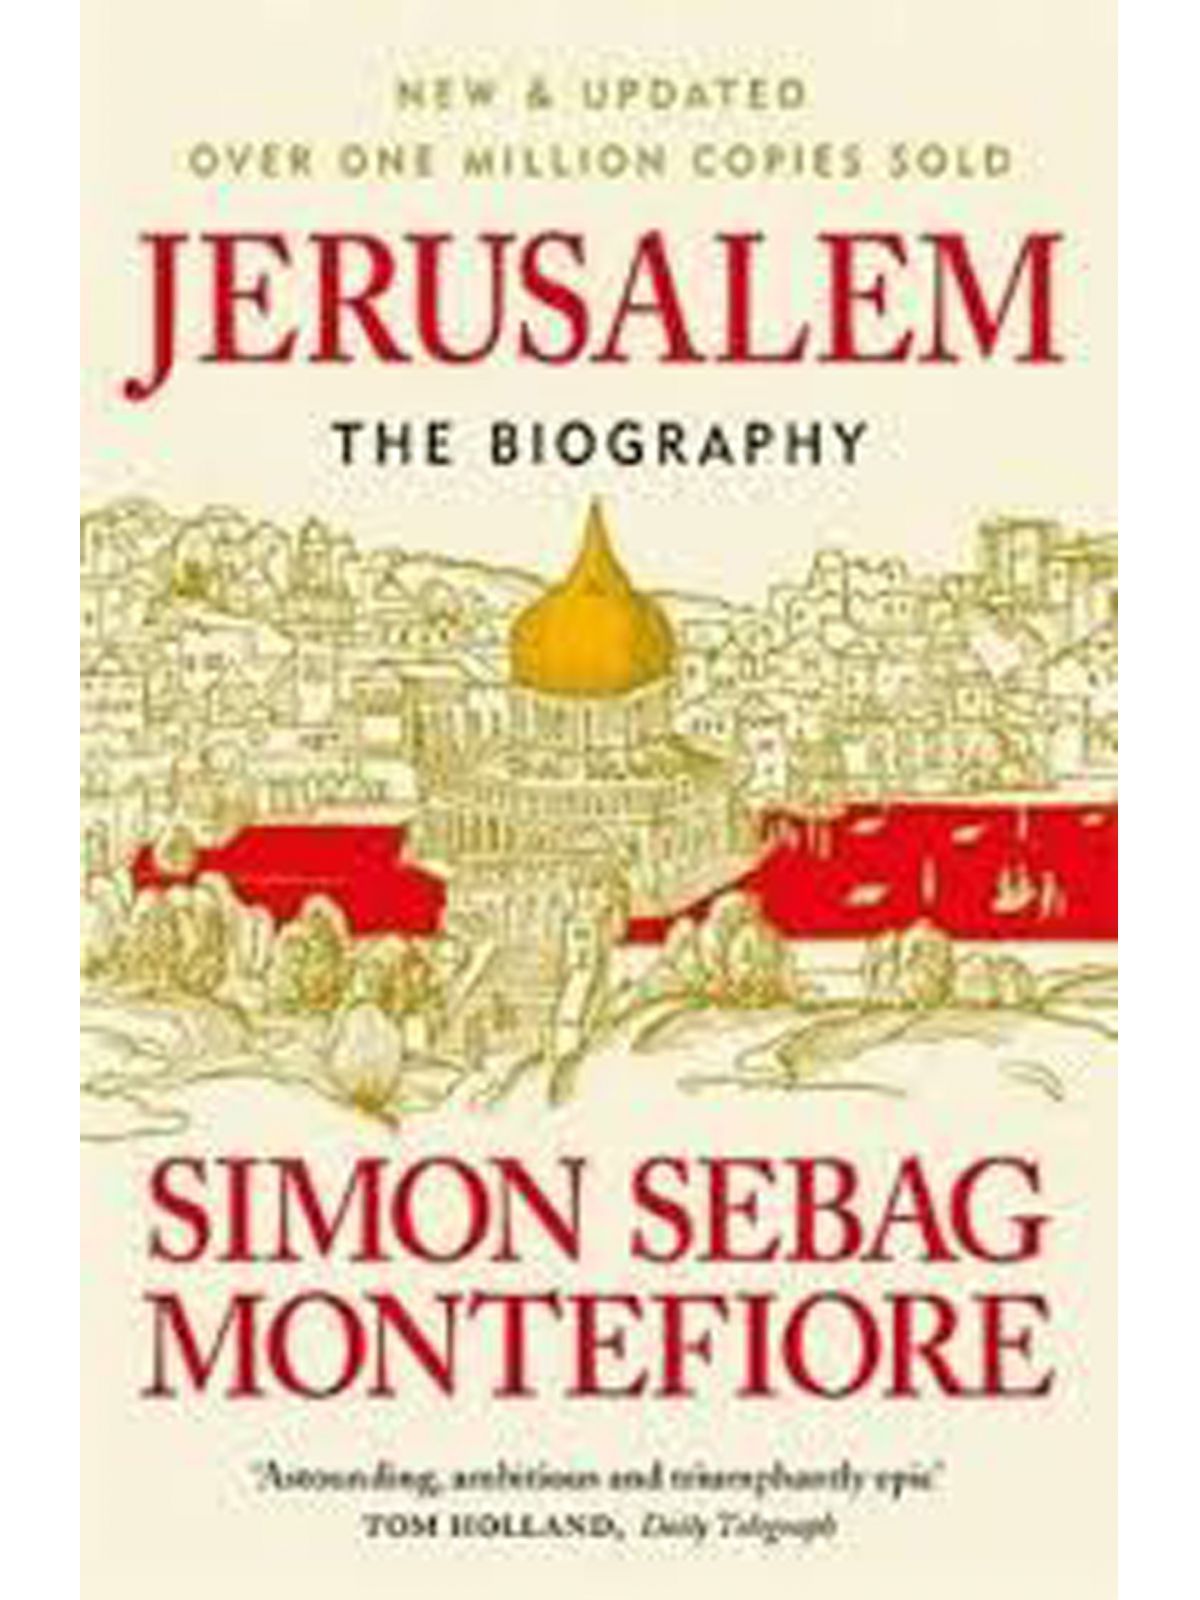 JERUSALEM A BIOGRAPHY SEBAG MONTEFIORE, SIMON Купить Книгу на Английском